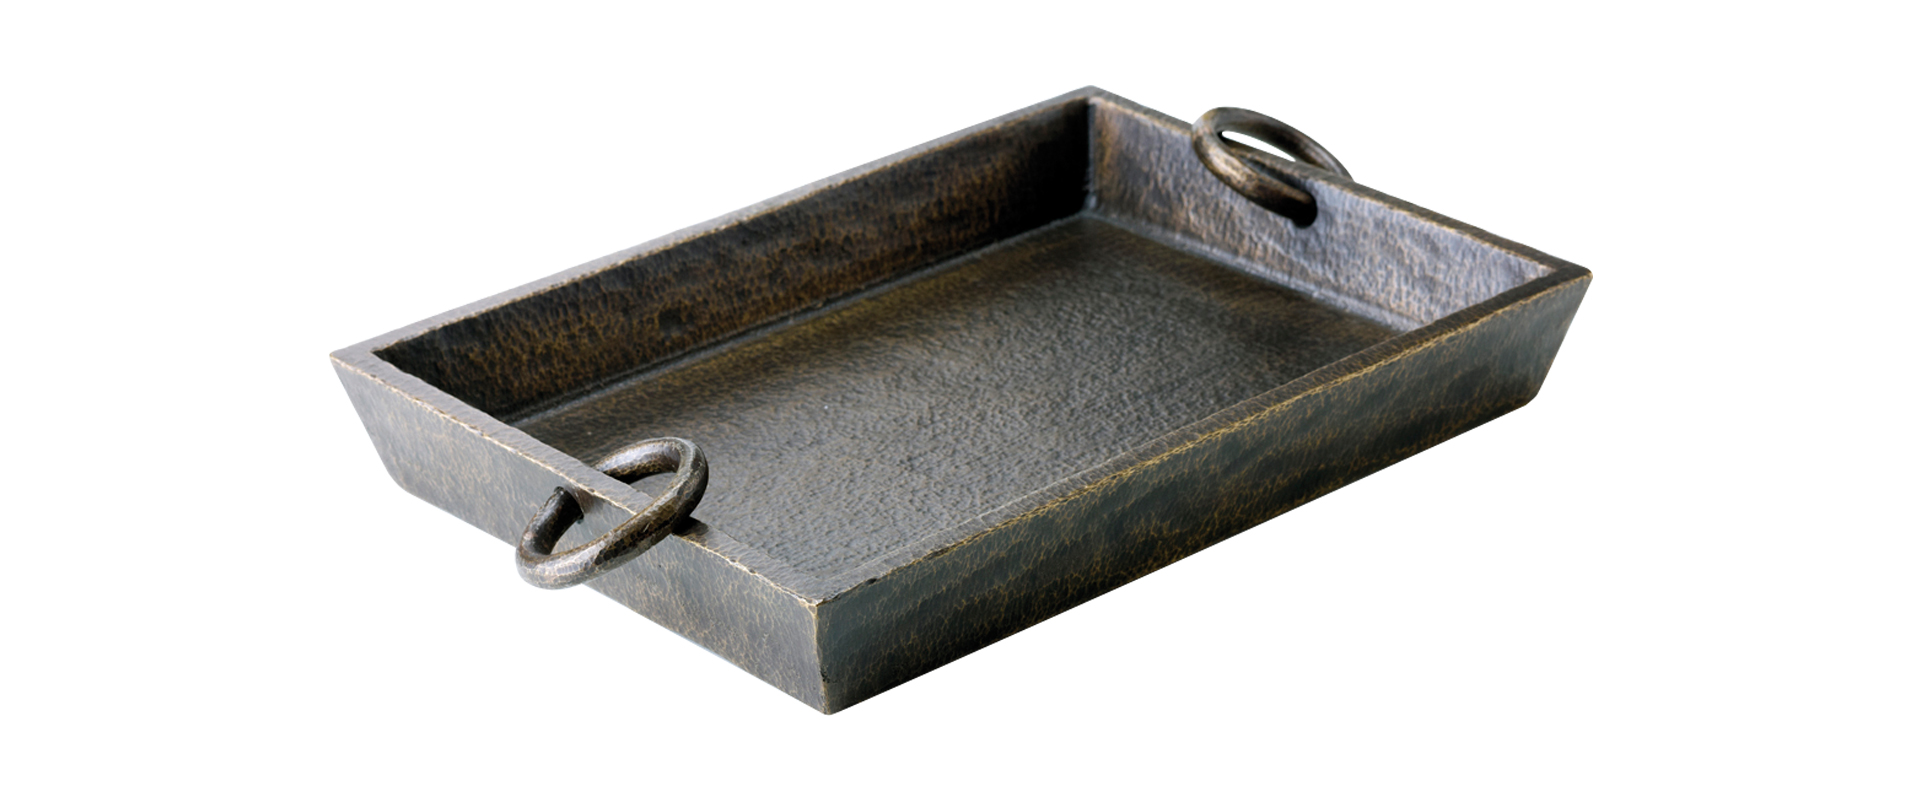 Vuotatasche is a small bronze object holder, from Promemoria's catalogue | Promemoria